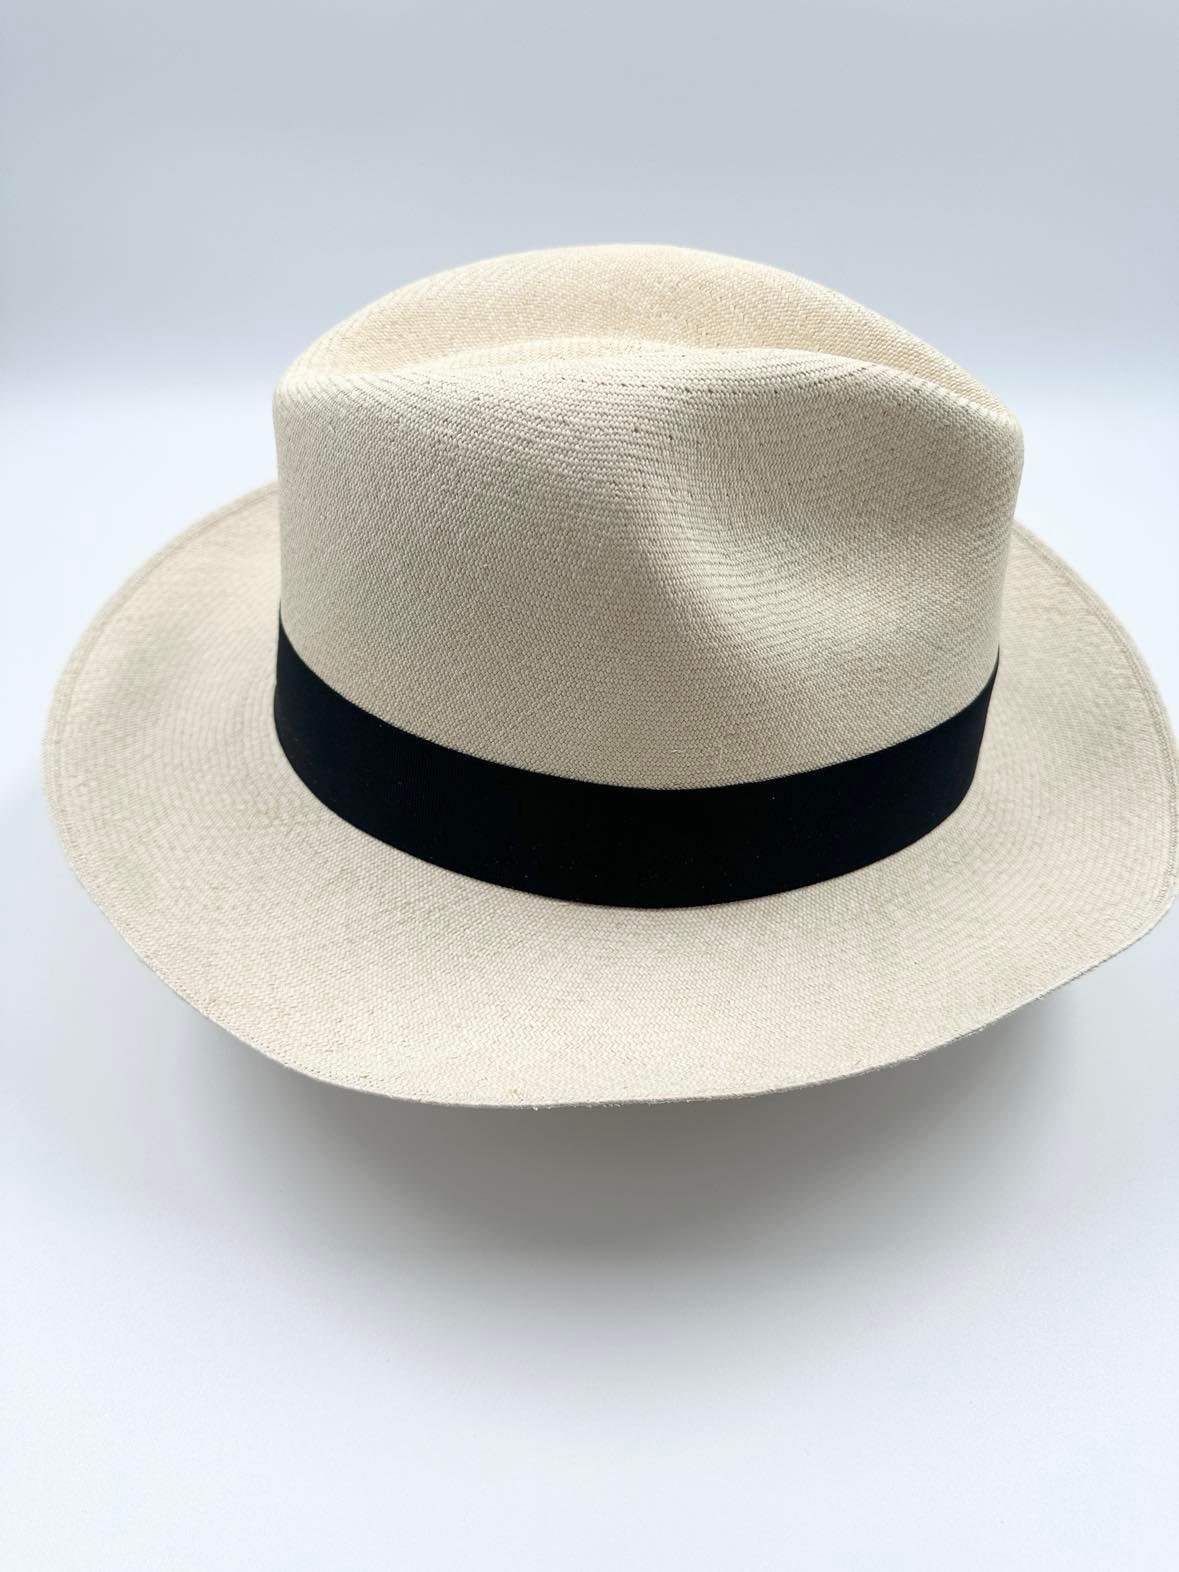 Ægte Montecristi Fedora Panama Hat med en kvalitet på 19-20 fletninger pr. inch